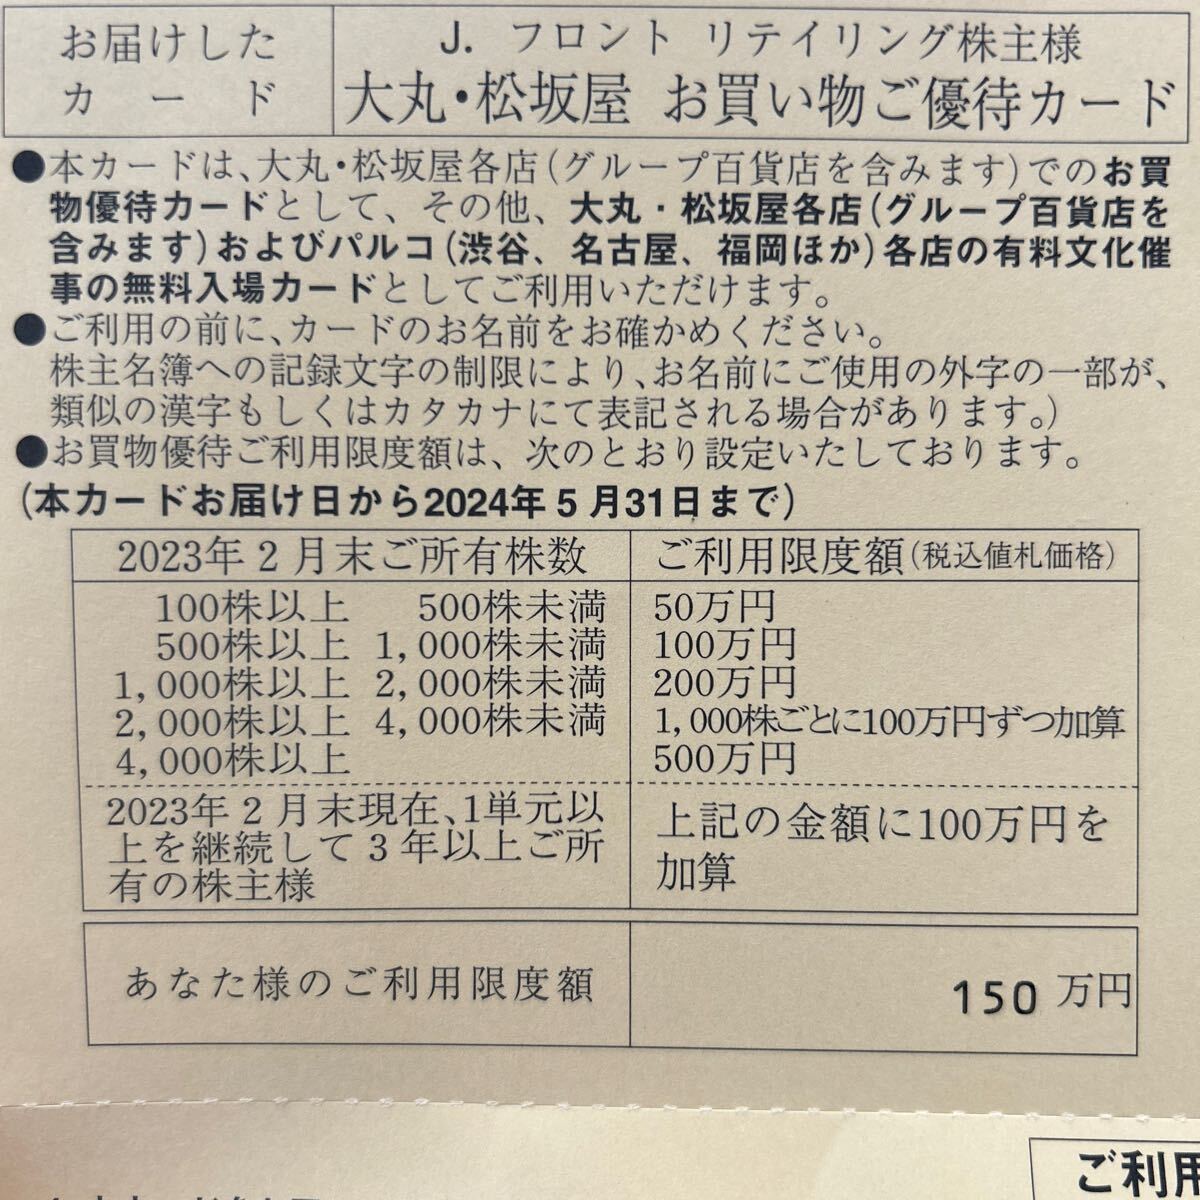 Jフロントリテイリング 大丸松坂屋 株主優待カード 2024.5期限の画像2